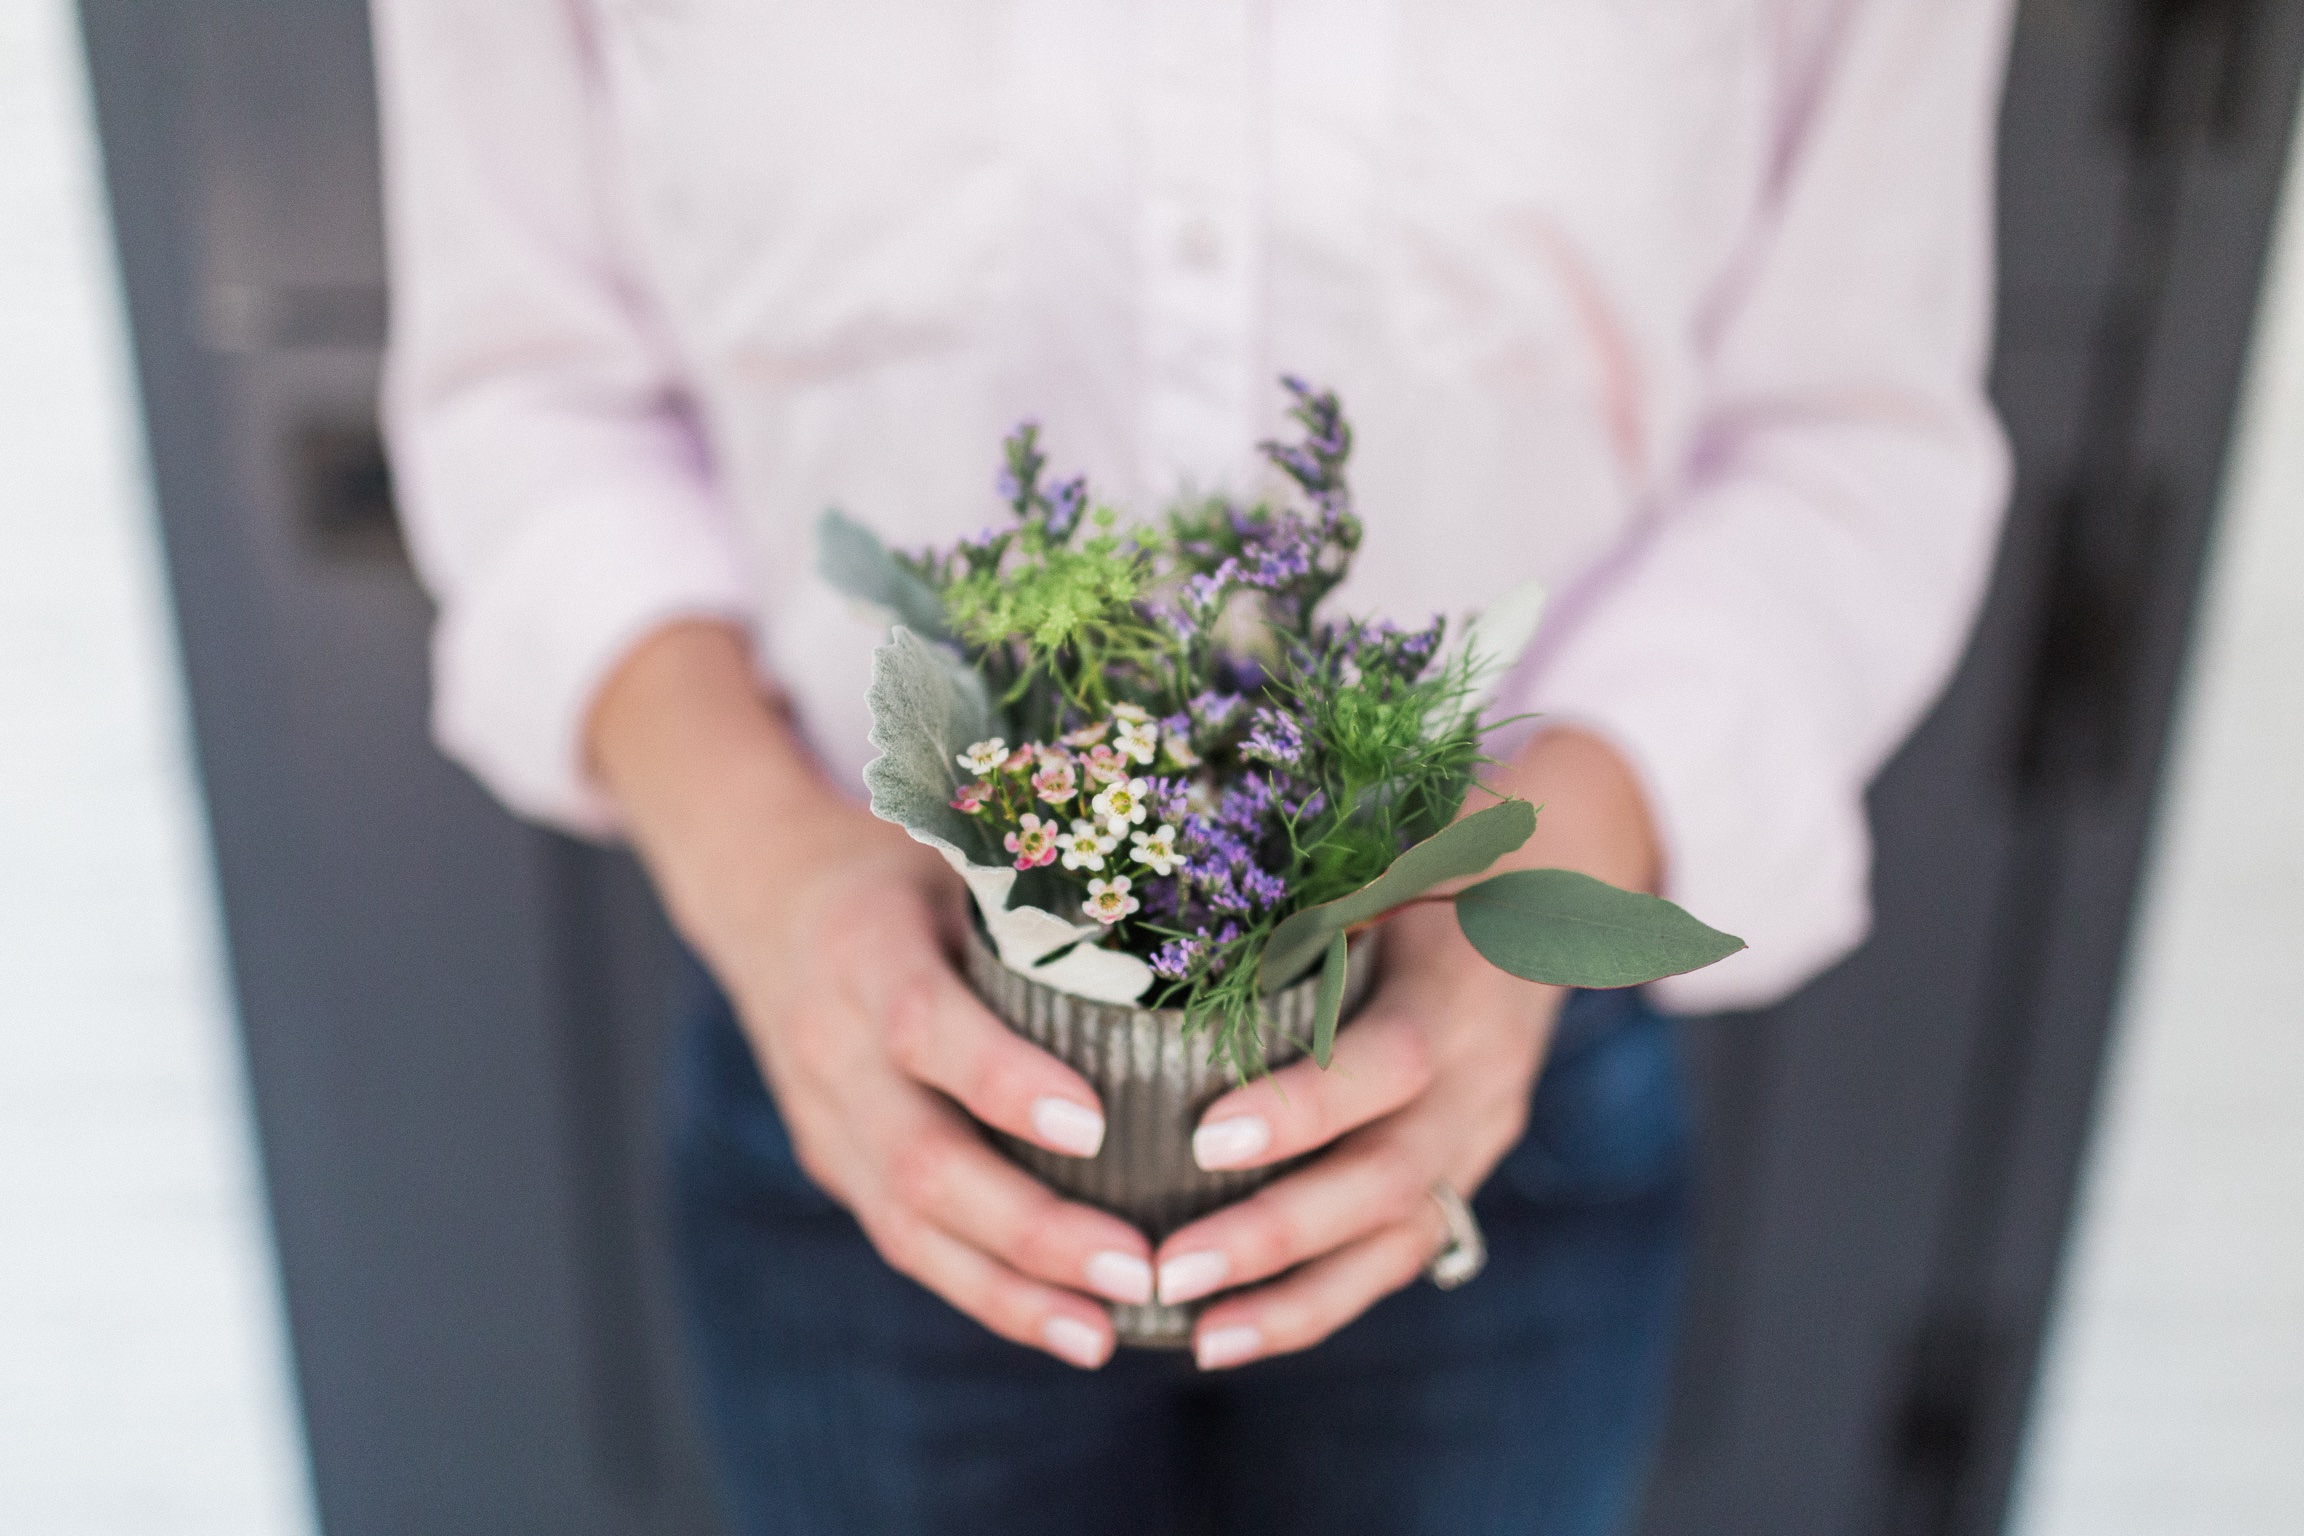 Floral Arranging Tips: My 7 Best Flower Hacks